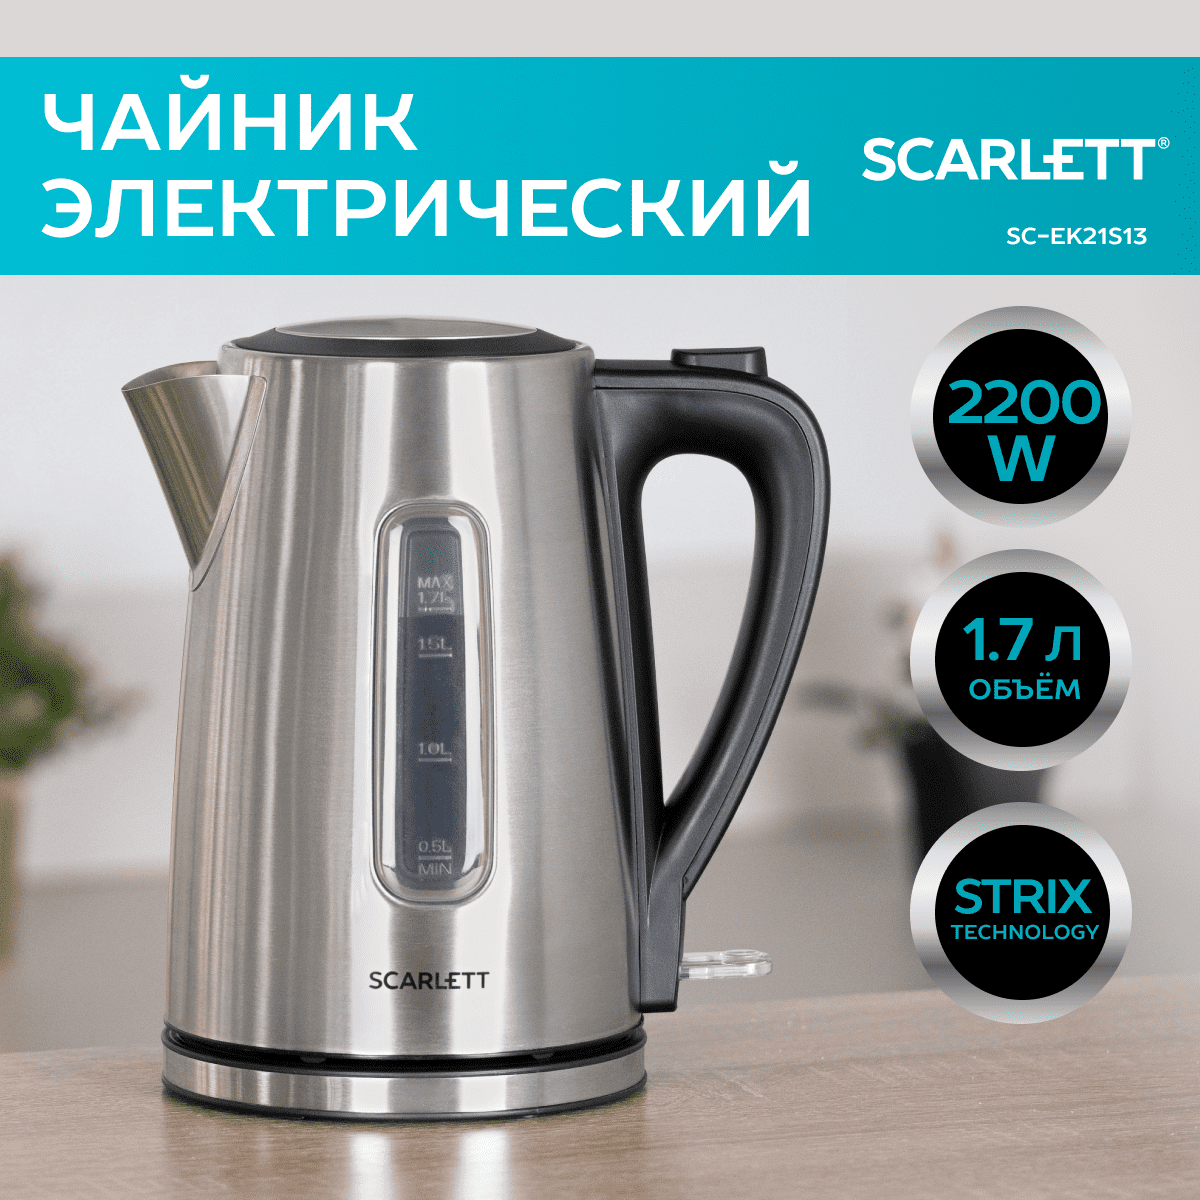 Чайник электрический Scarlett SC-EK21S13 1.7 л серебристый фен scarlett sc hd70i63 2200 вт